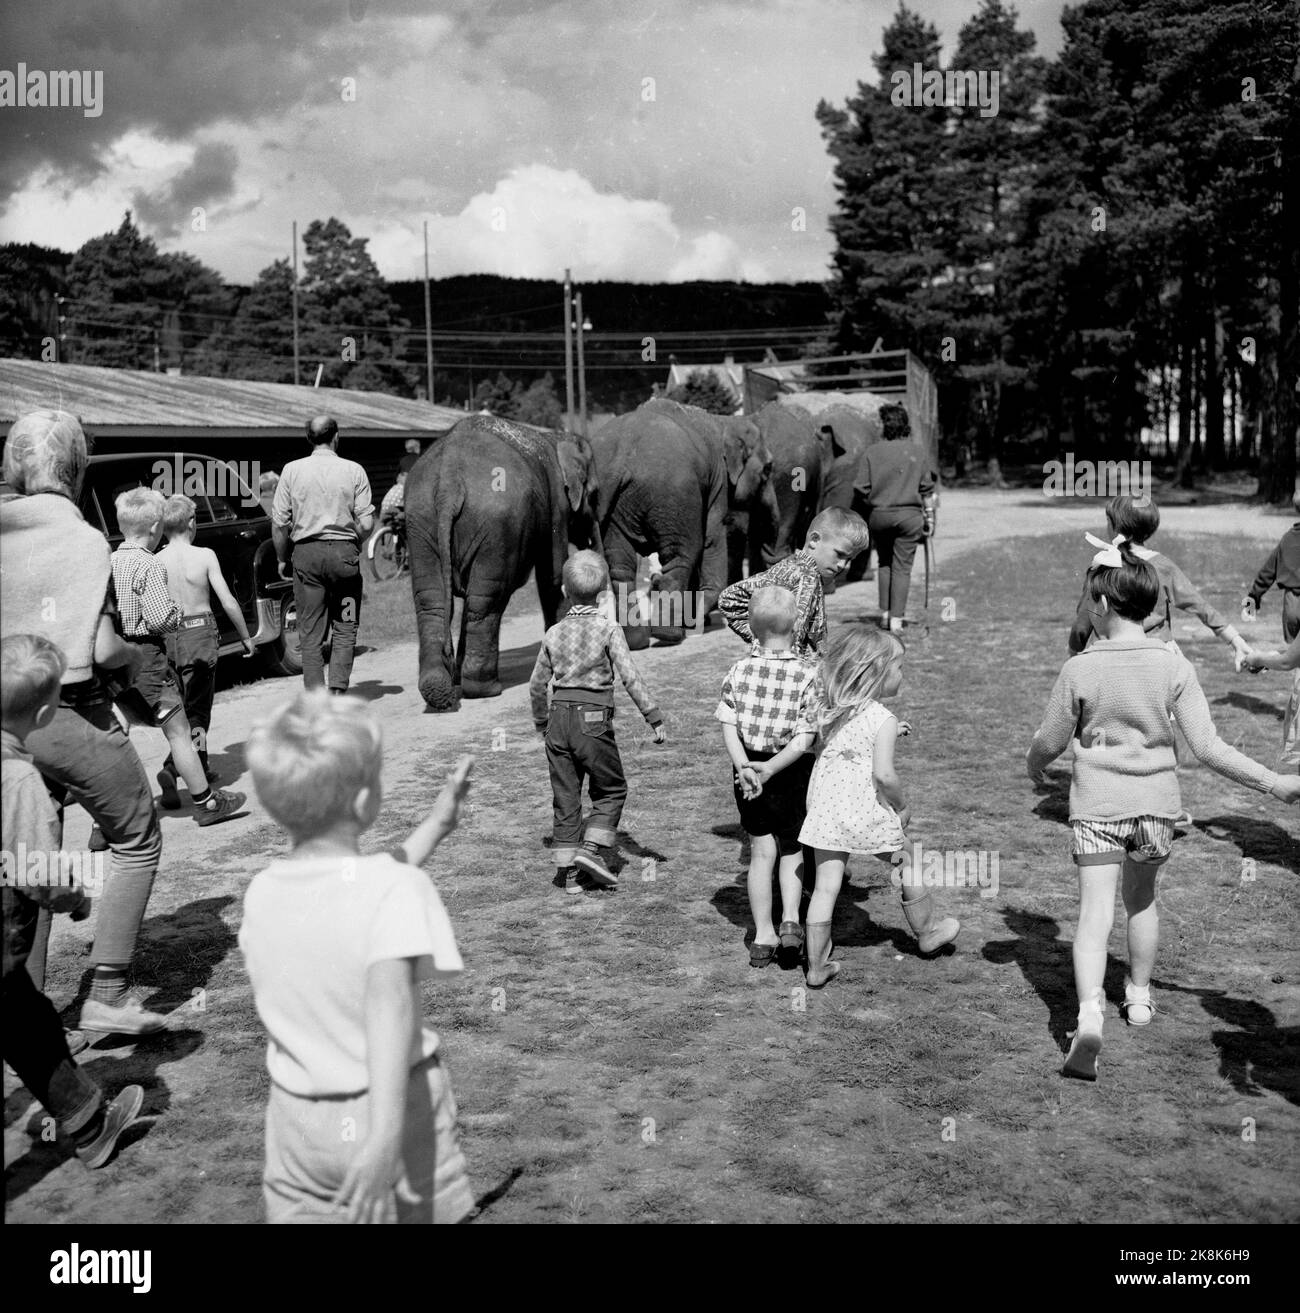 Sørlandet, sommeren 1962. Da elefantene kom til Evje: fire døgns slit for åtte minutters opptreden. Sirkus Arnardo er på turne på Sørlandet med fem to-tonns elefanter. Det byr på problemer. De sto i jernbanevogner i ett døgn på Marnardal stasjon fordi det ikke fantes biler som kunne ta dem videre. Dagen etter reiste de videre til Grovane stasjon hvor de skulle lastes om til den smalsporede Setesdalsbanen til Evje. Det var mislykket, og først etter fire døgn kom elefantene til Evje pr trailere, der forestillingen allerede var i gang.   Her elefantene under ett av omlastingsforsøkene, mens lokal Stock Photo